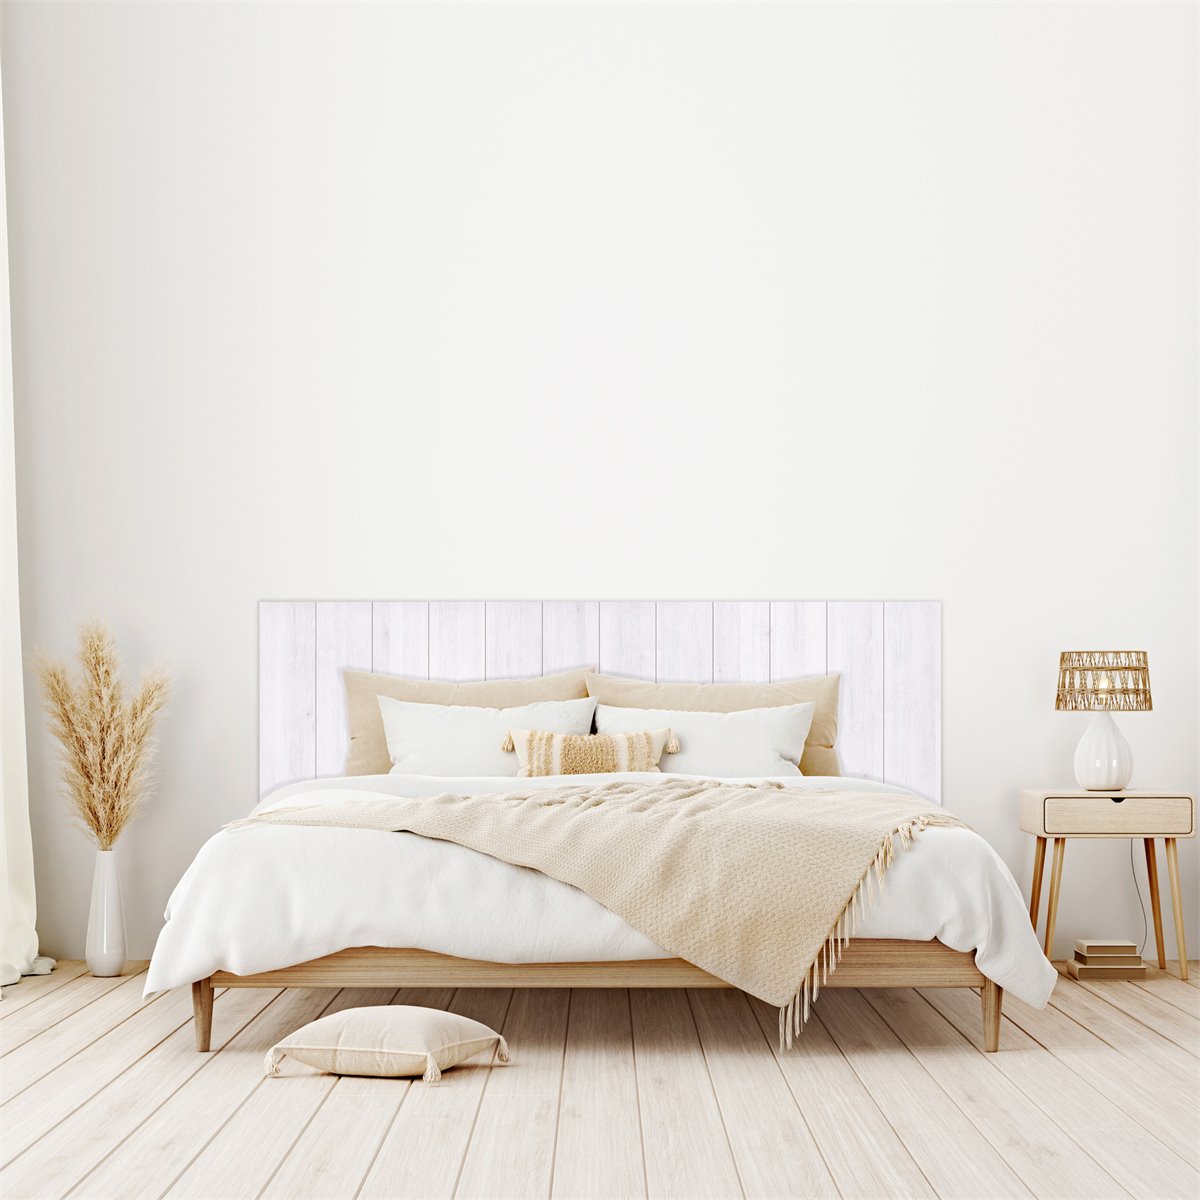 Precioso dormitorio nórdico con listones y banco de madera